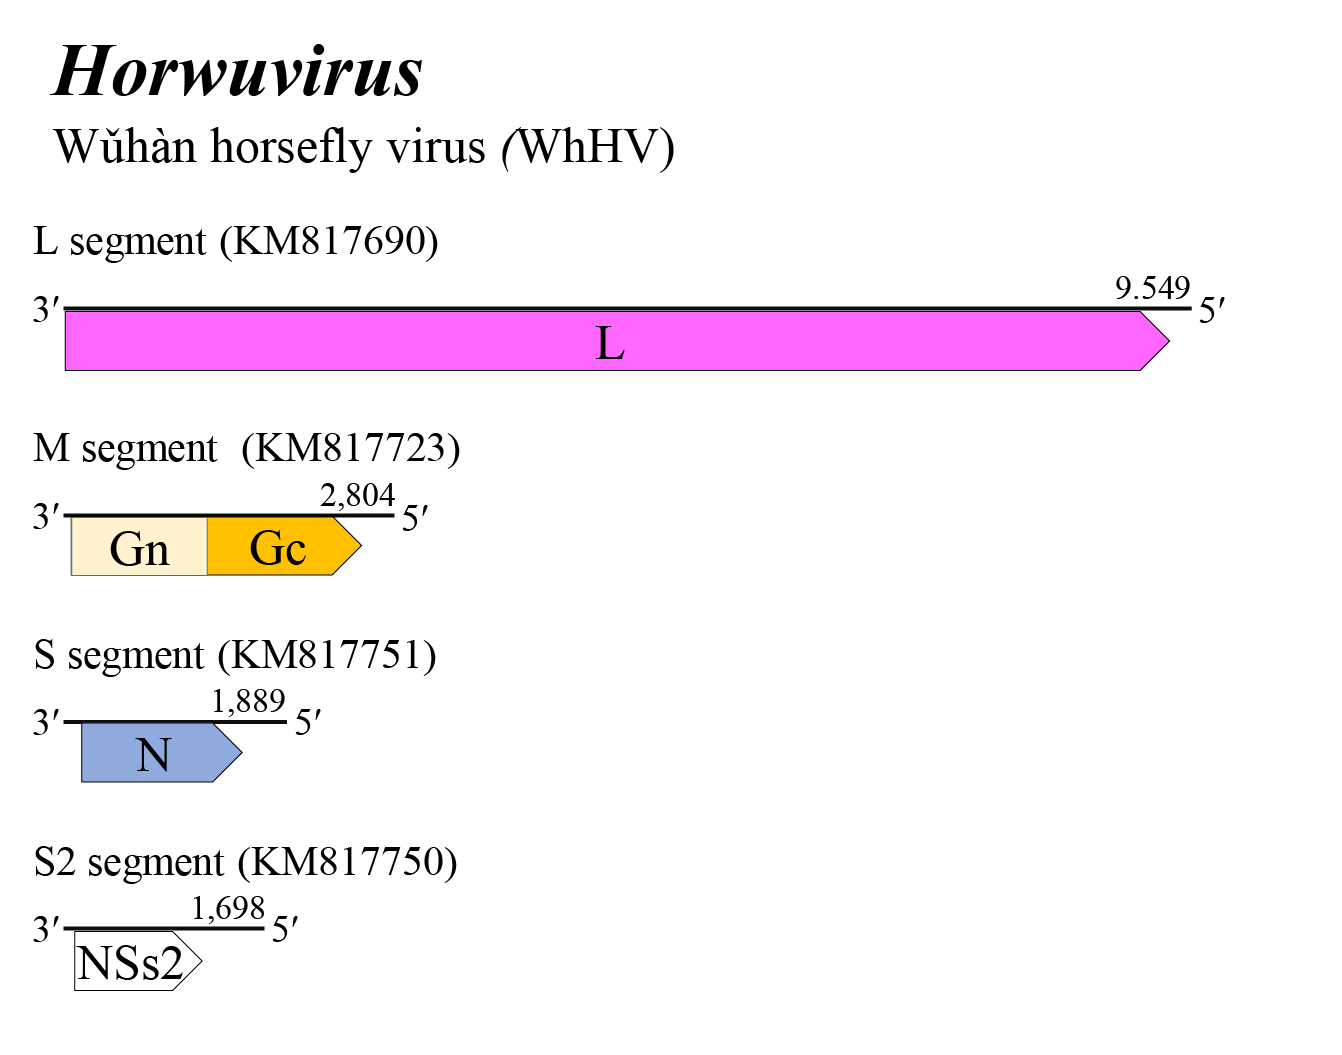 Horwuvirus genome